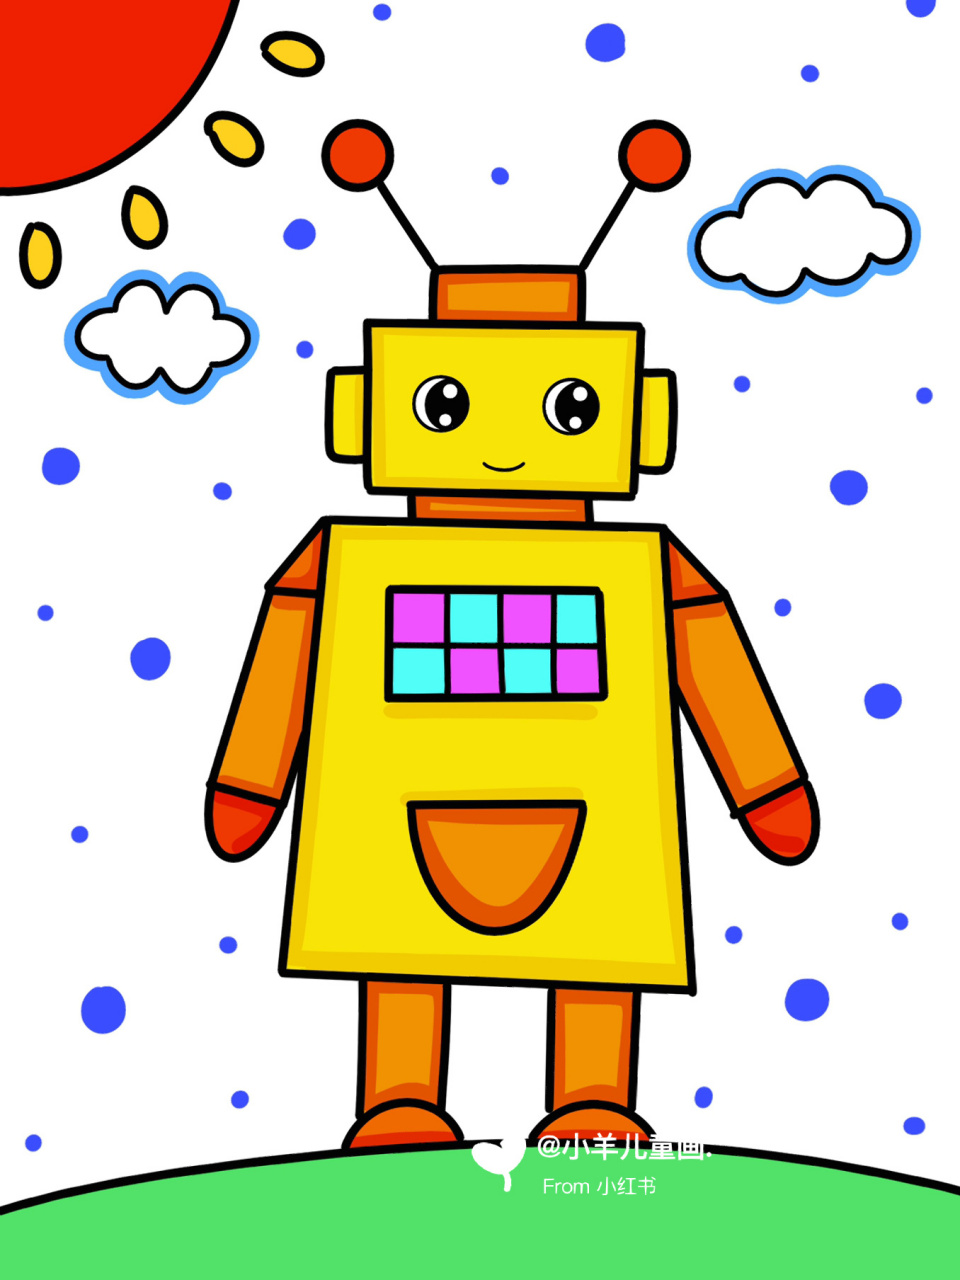 机器人儿童创意画 几何图形简笔画 简单易画 